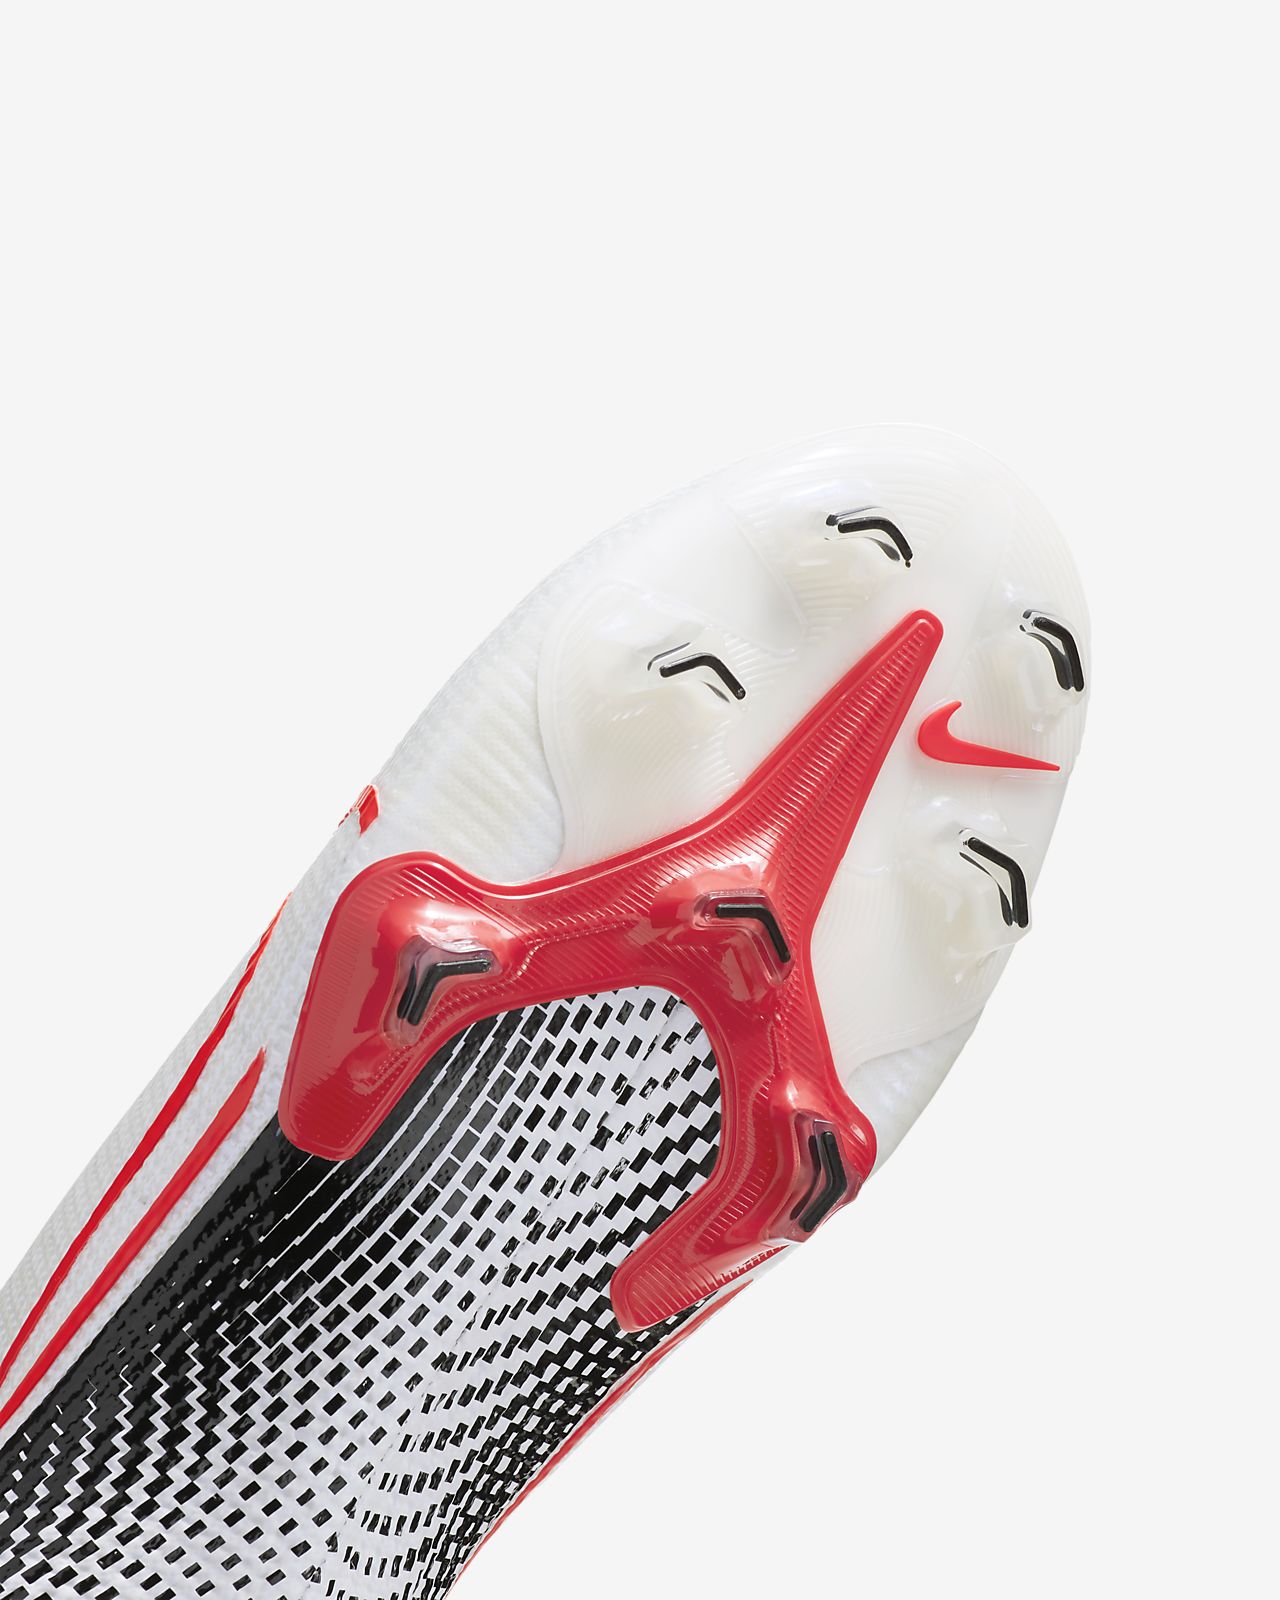 Nike Mercurial Vapor XIII Academy AG Junior Football Boots.